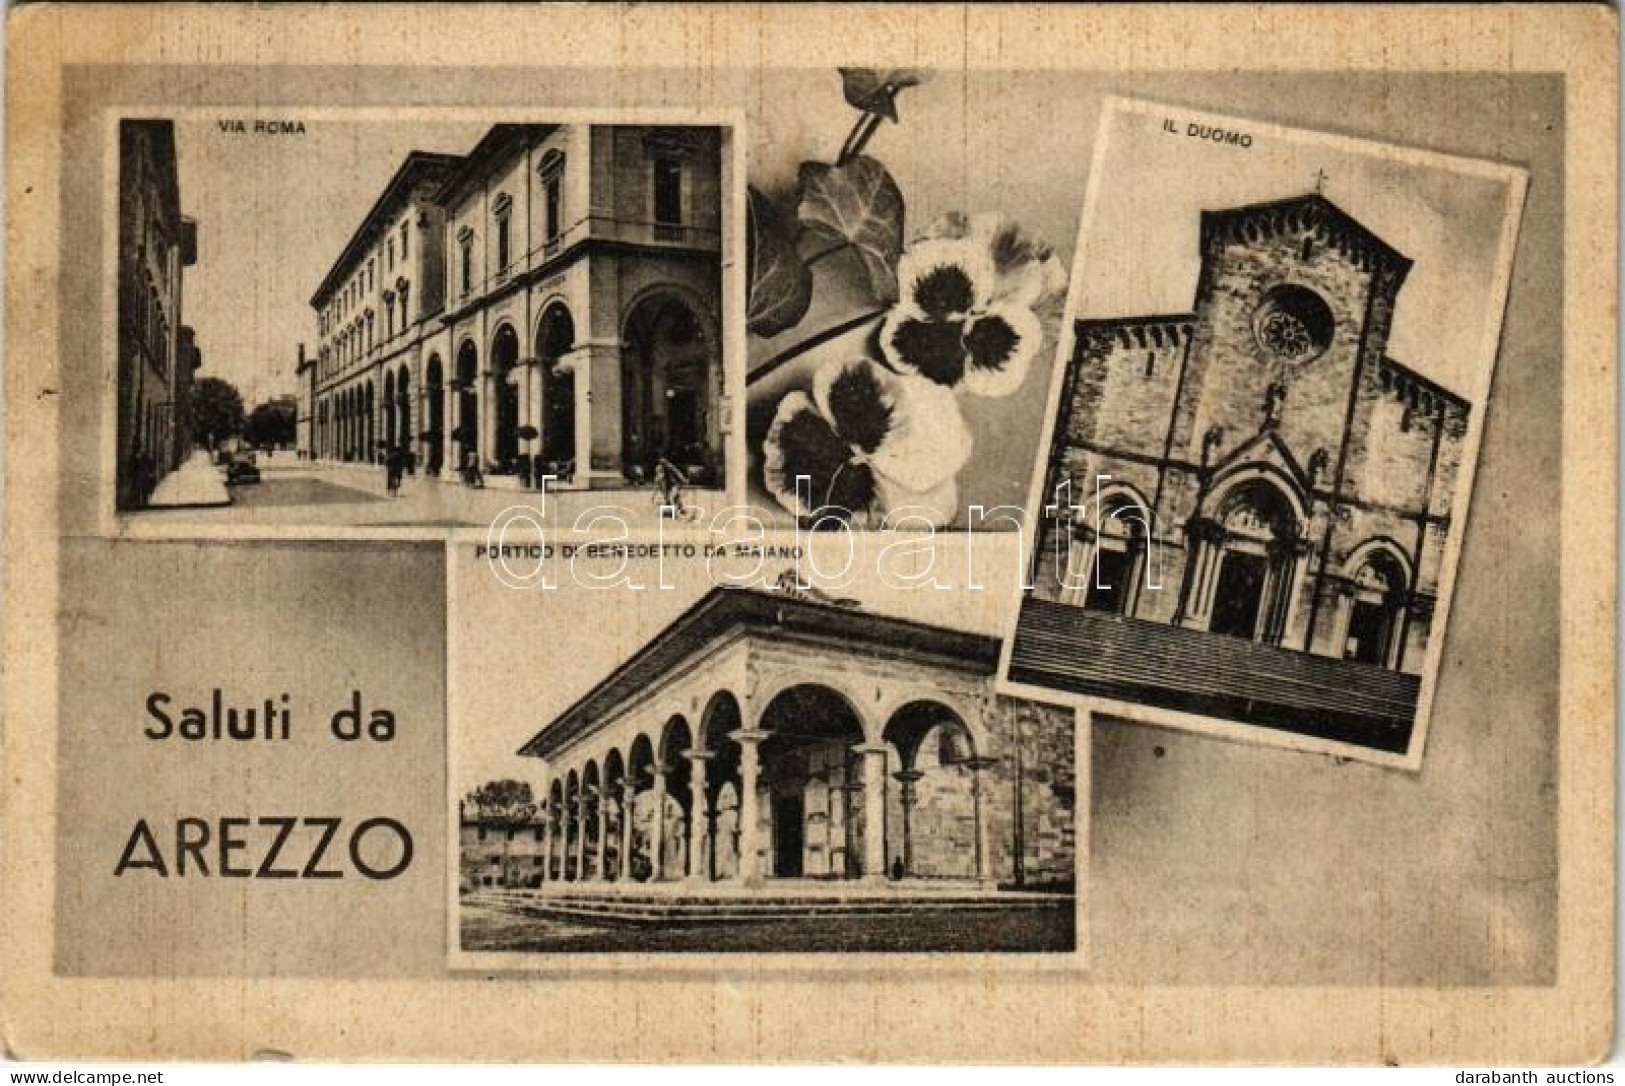 T2/T3 1942 Arezzo, Via Roma, Il Duomo, Portico Di Benedetto Da Maiano / Street View, Automobile, Bicycle, Cathedral. Ed. - Unclassified